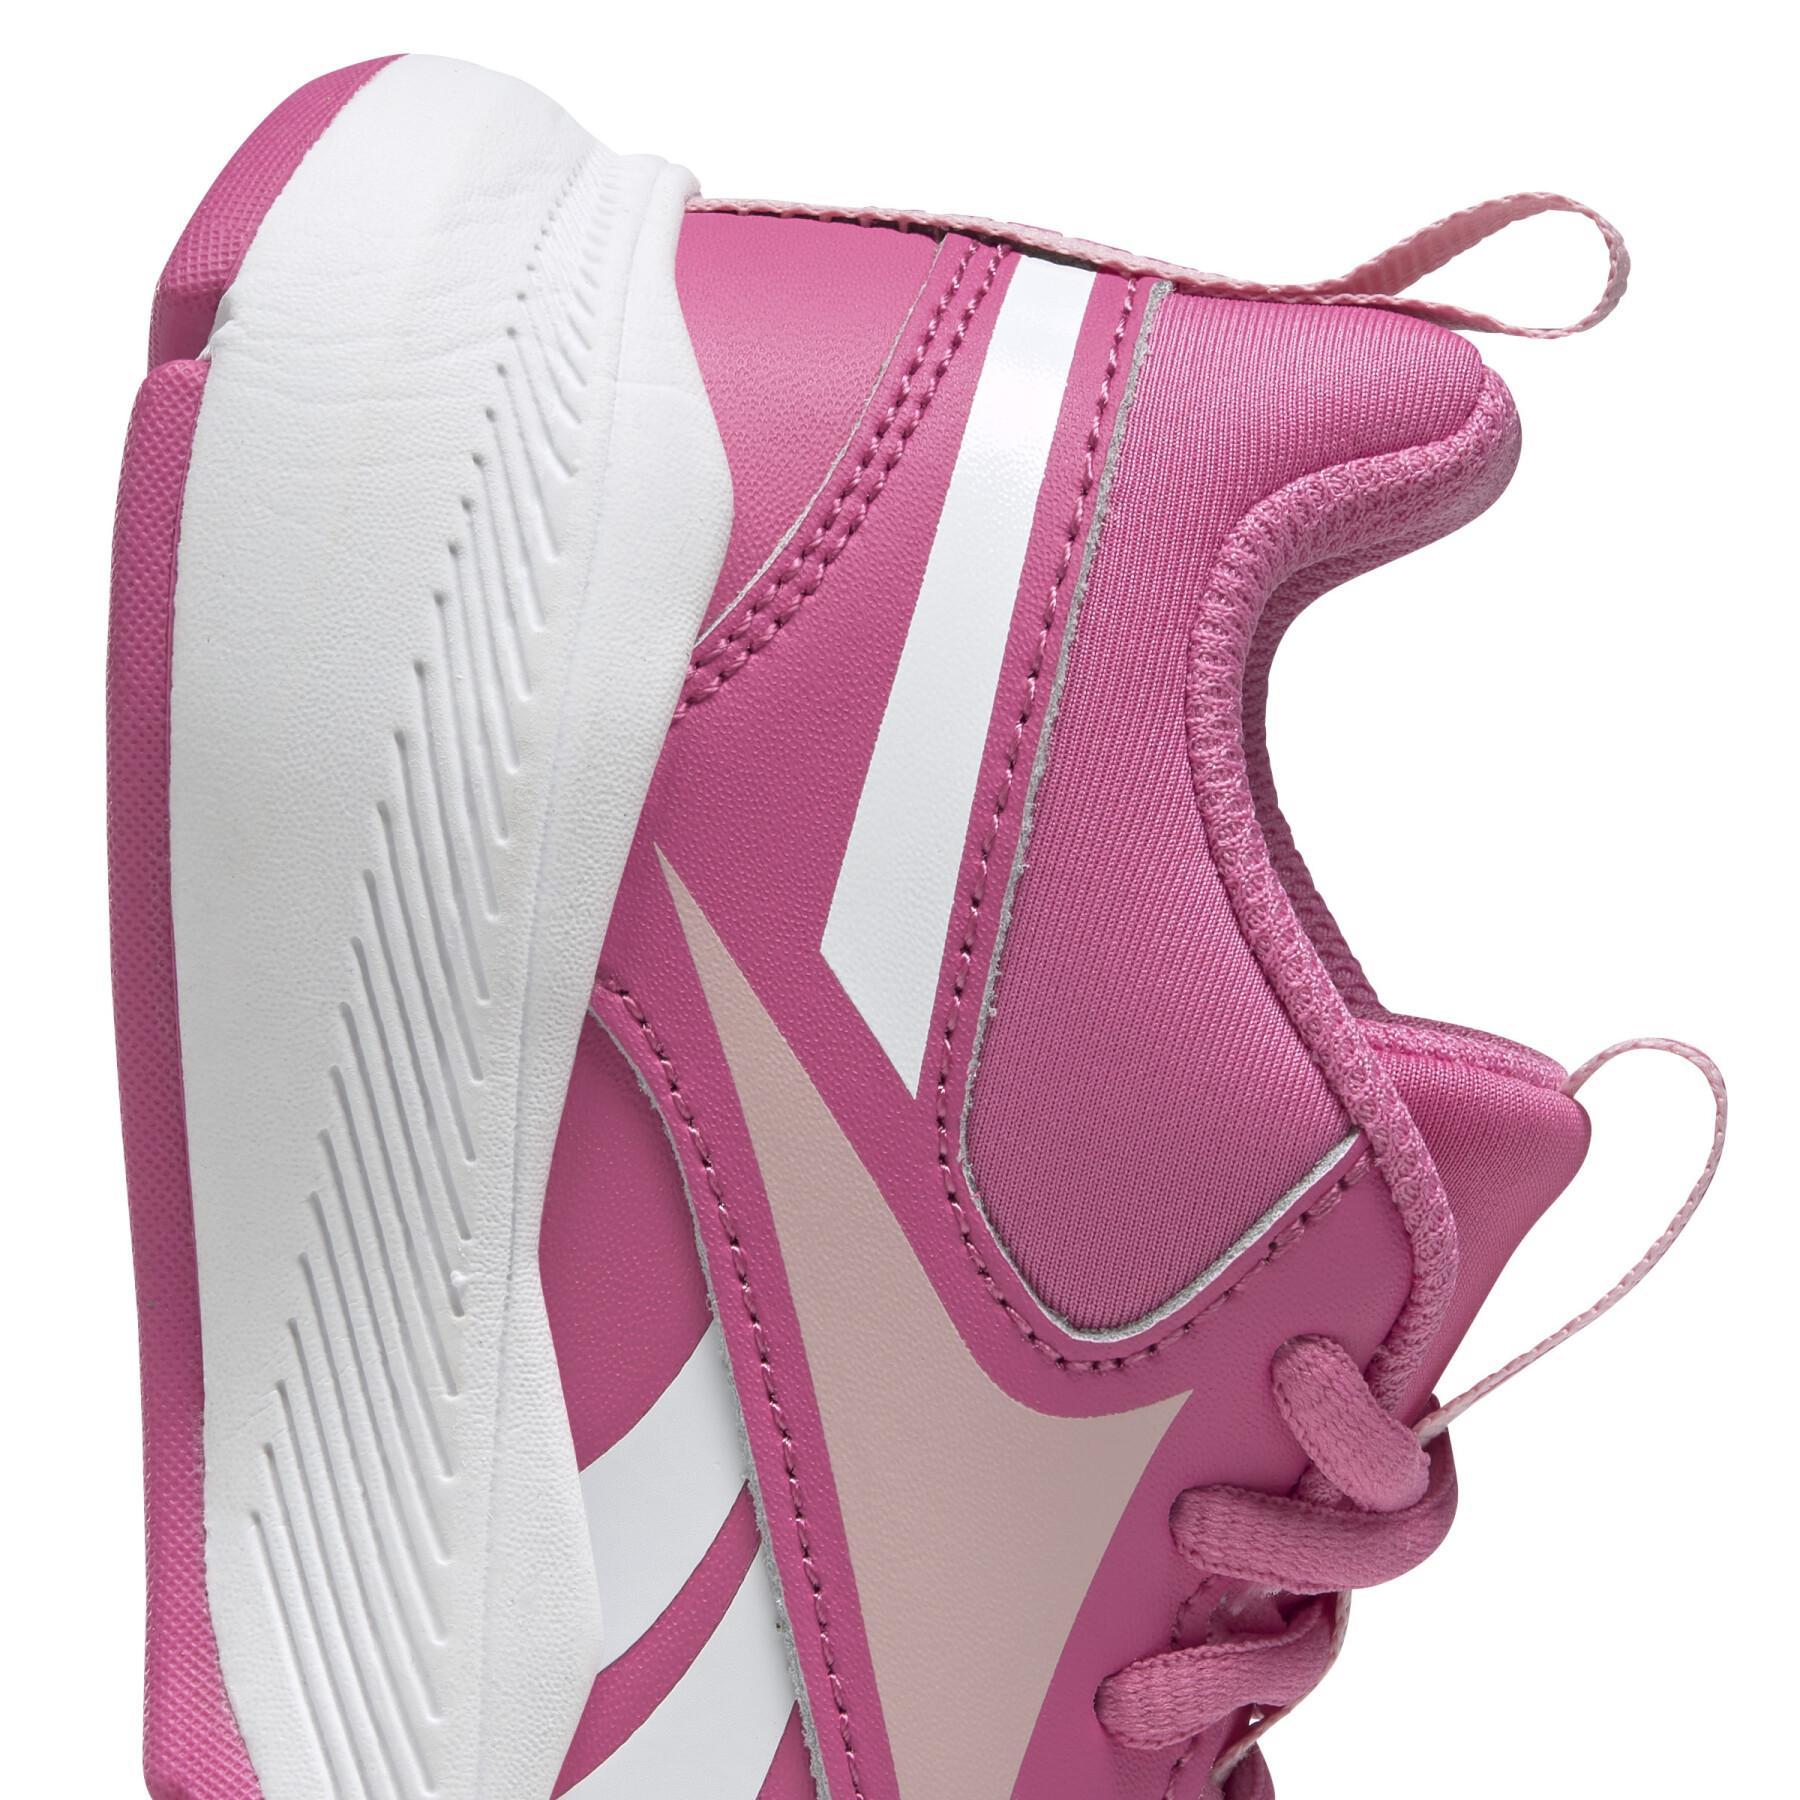 Schuhe für Mädchen Reebok XT Sprinter 2